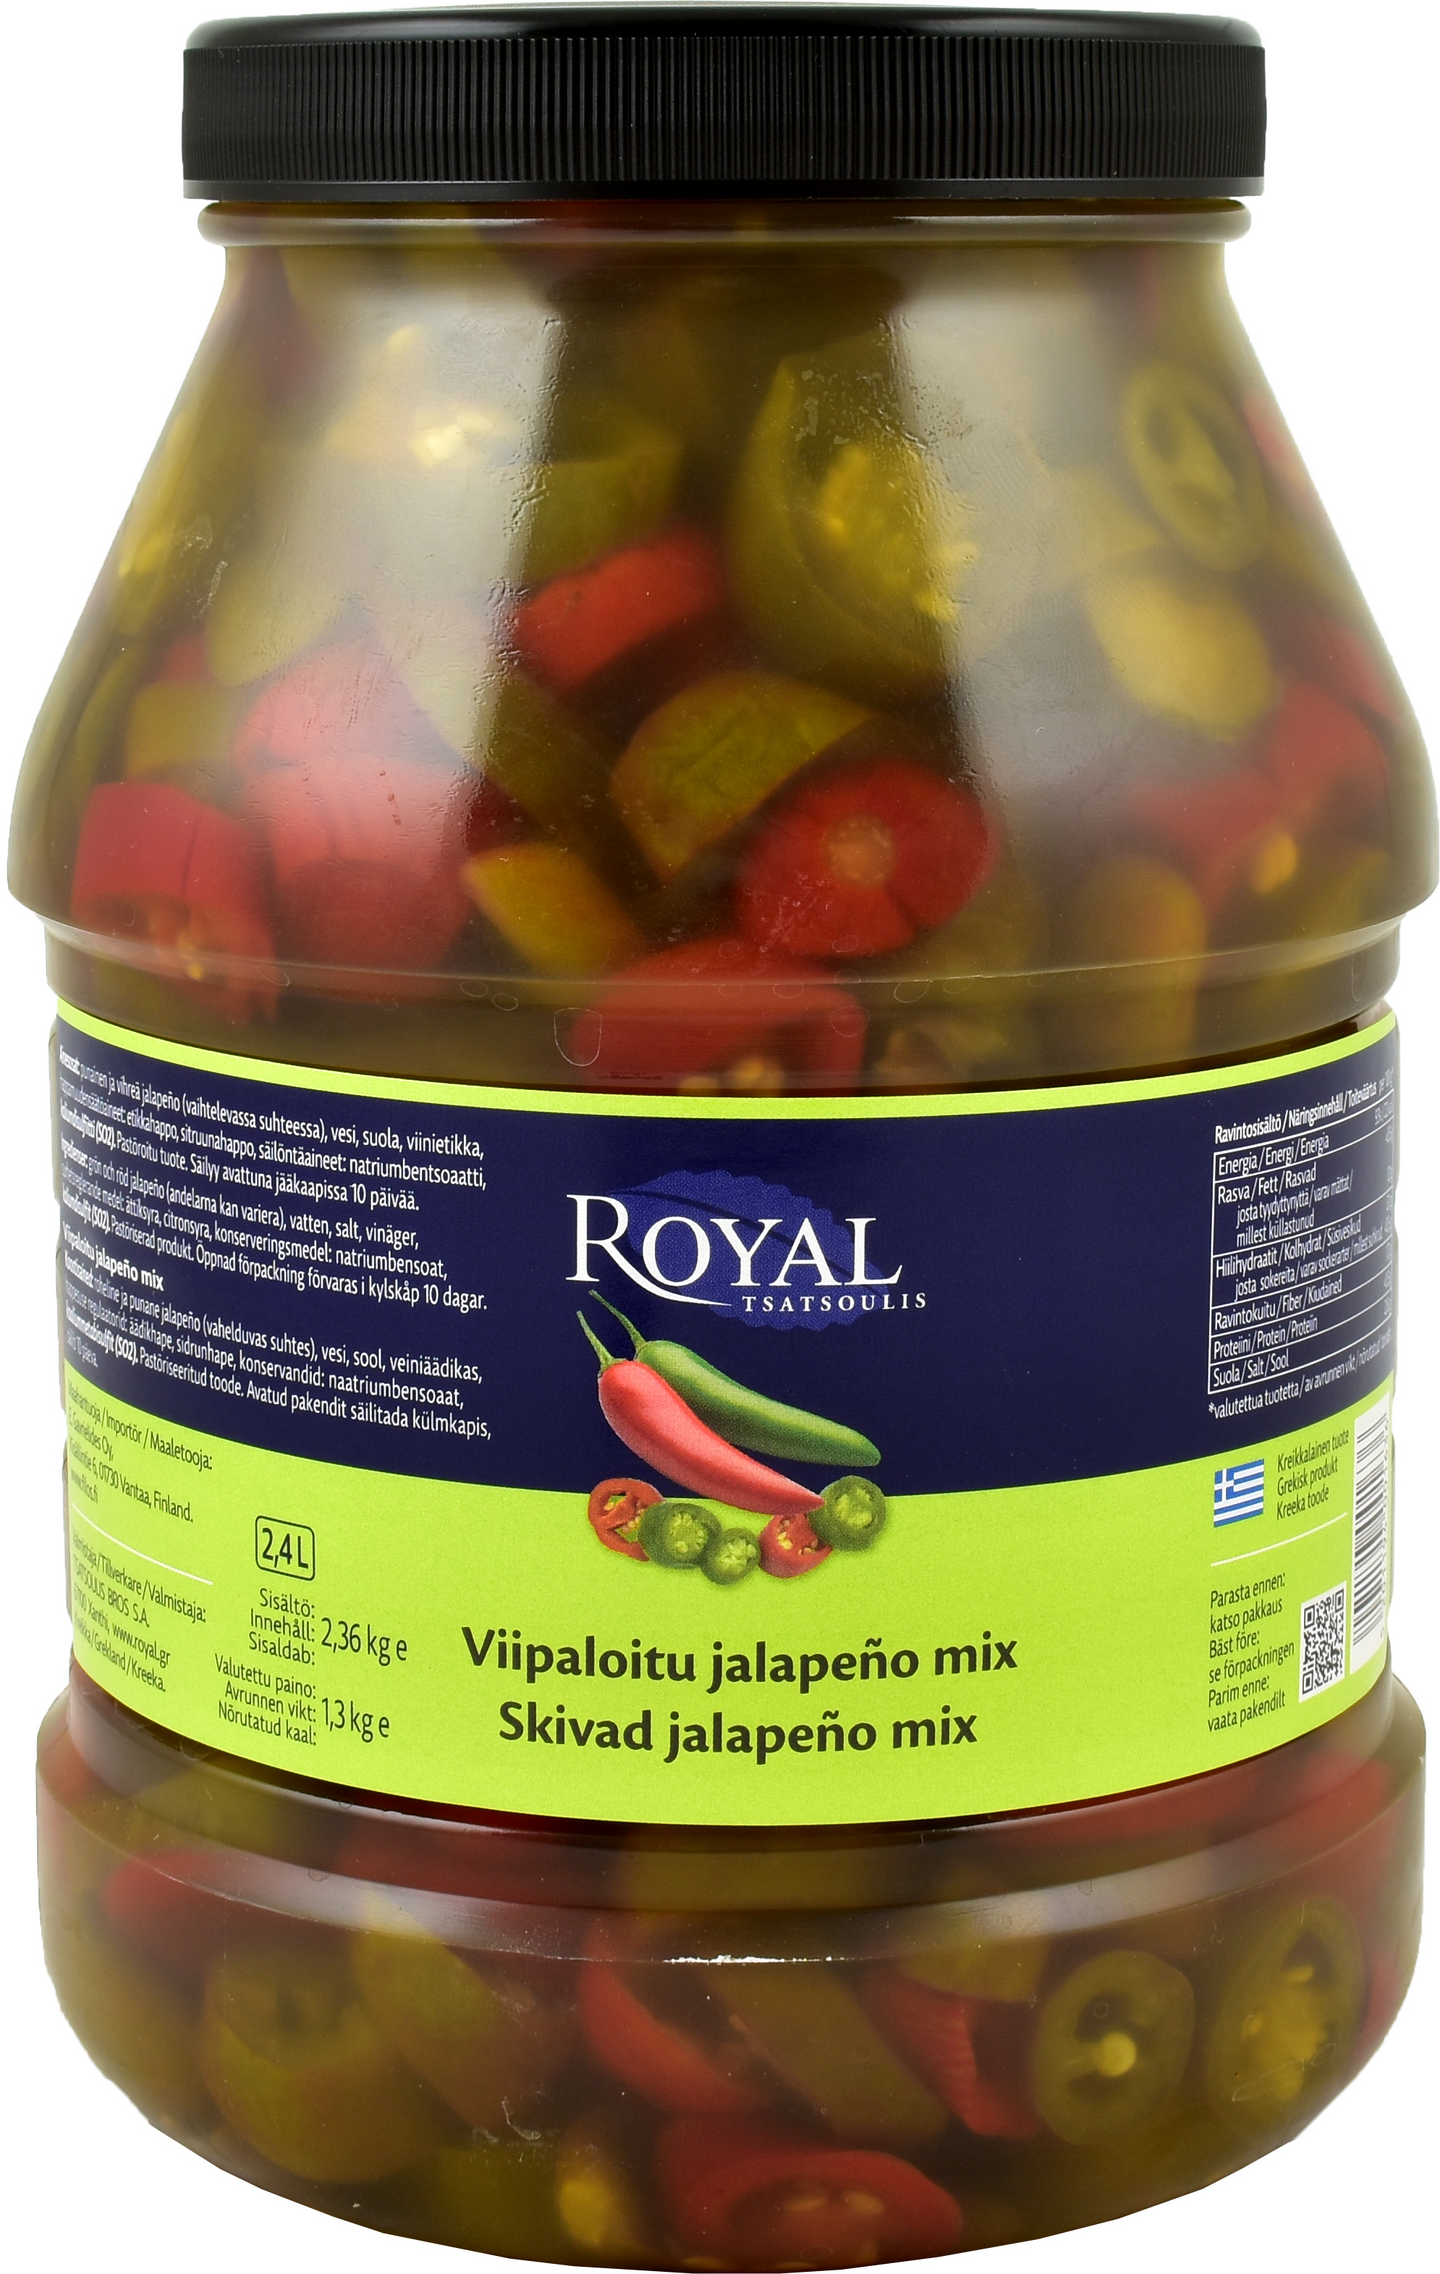 Royal vihreä & punainen viipaloitu jalapeno mix 2,36/1,3kg